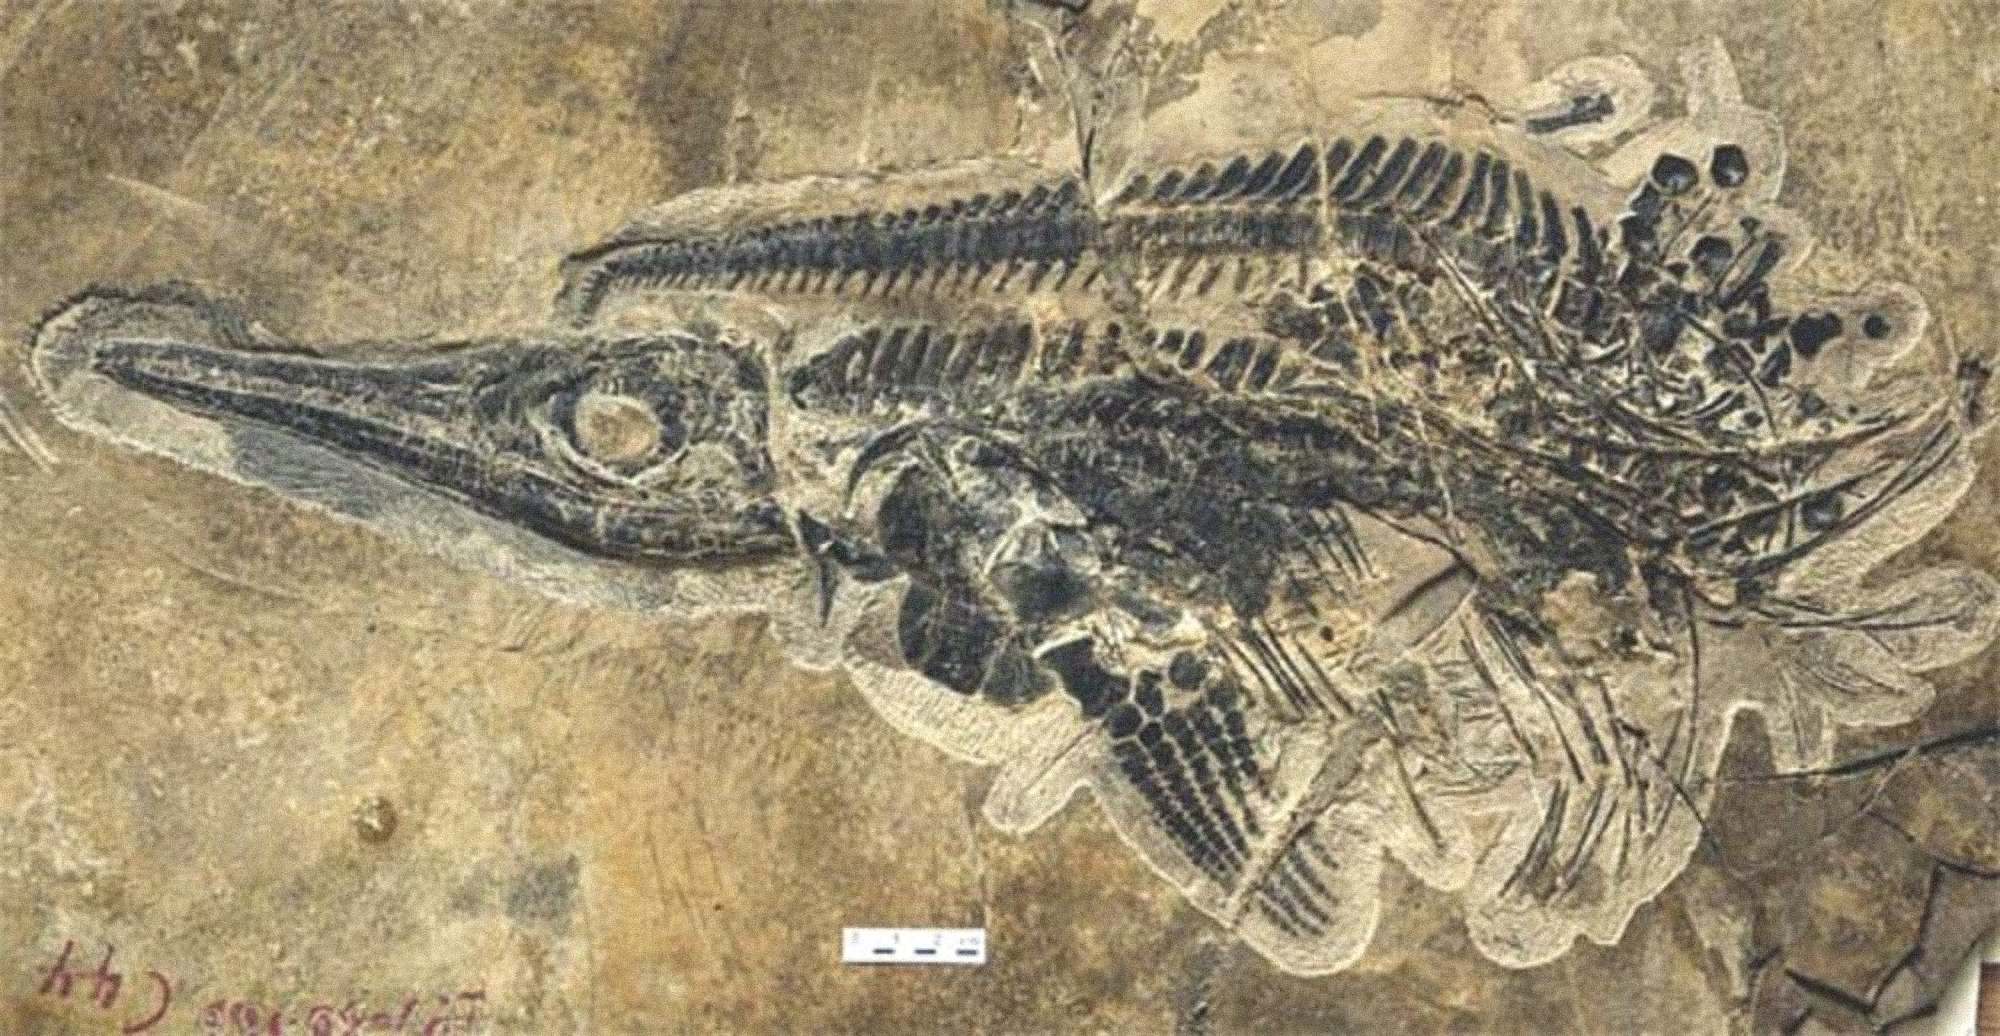 Un fossile du reptile marin au corps de dauphin connu sous le nom d'ichtyosaure, découvert dans le cadre d'une cache géante de près de 20,000 XNUMX fossiles en Chine.